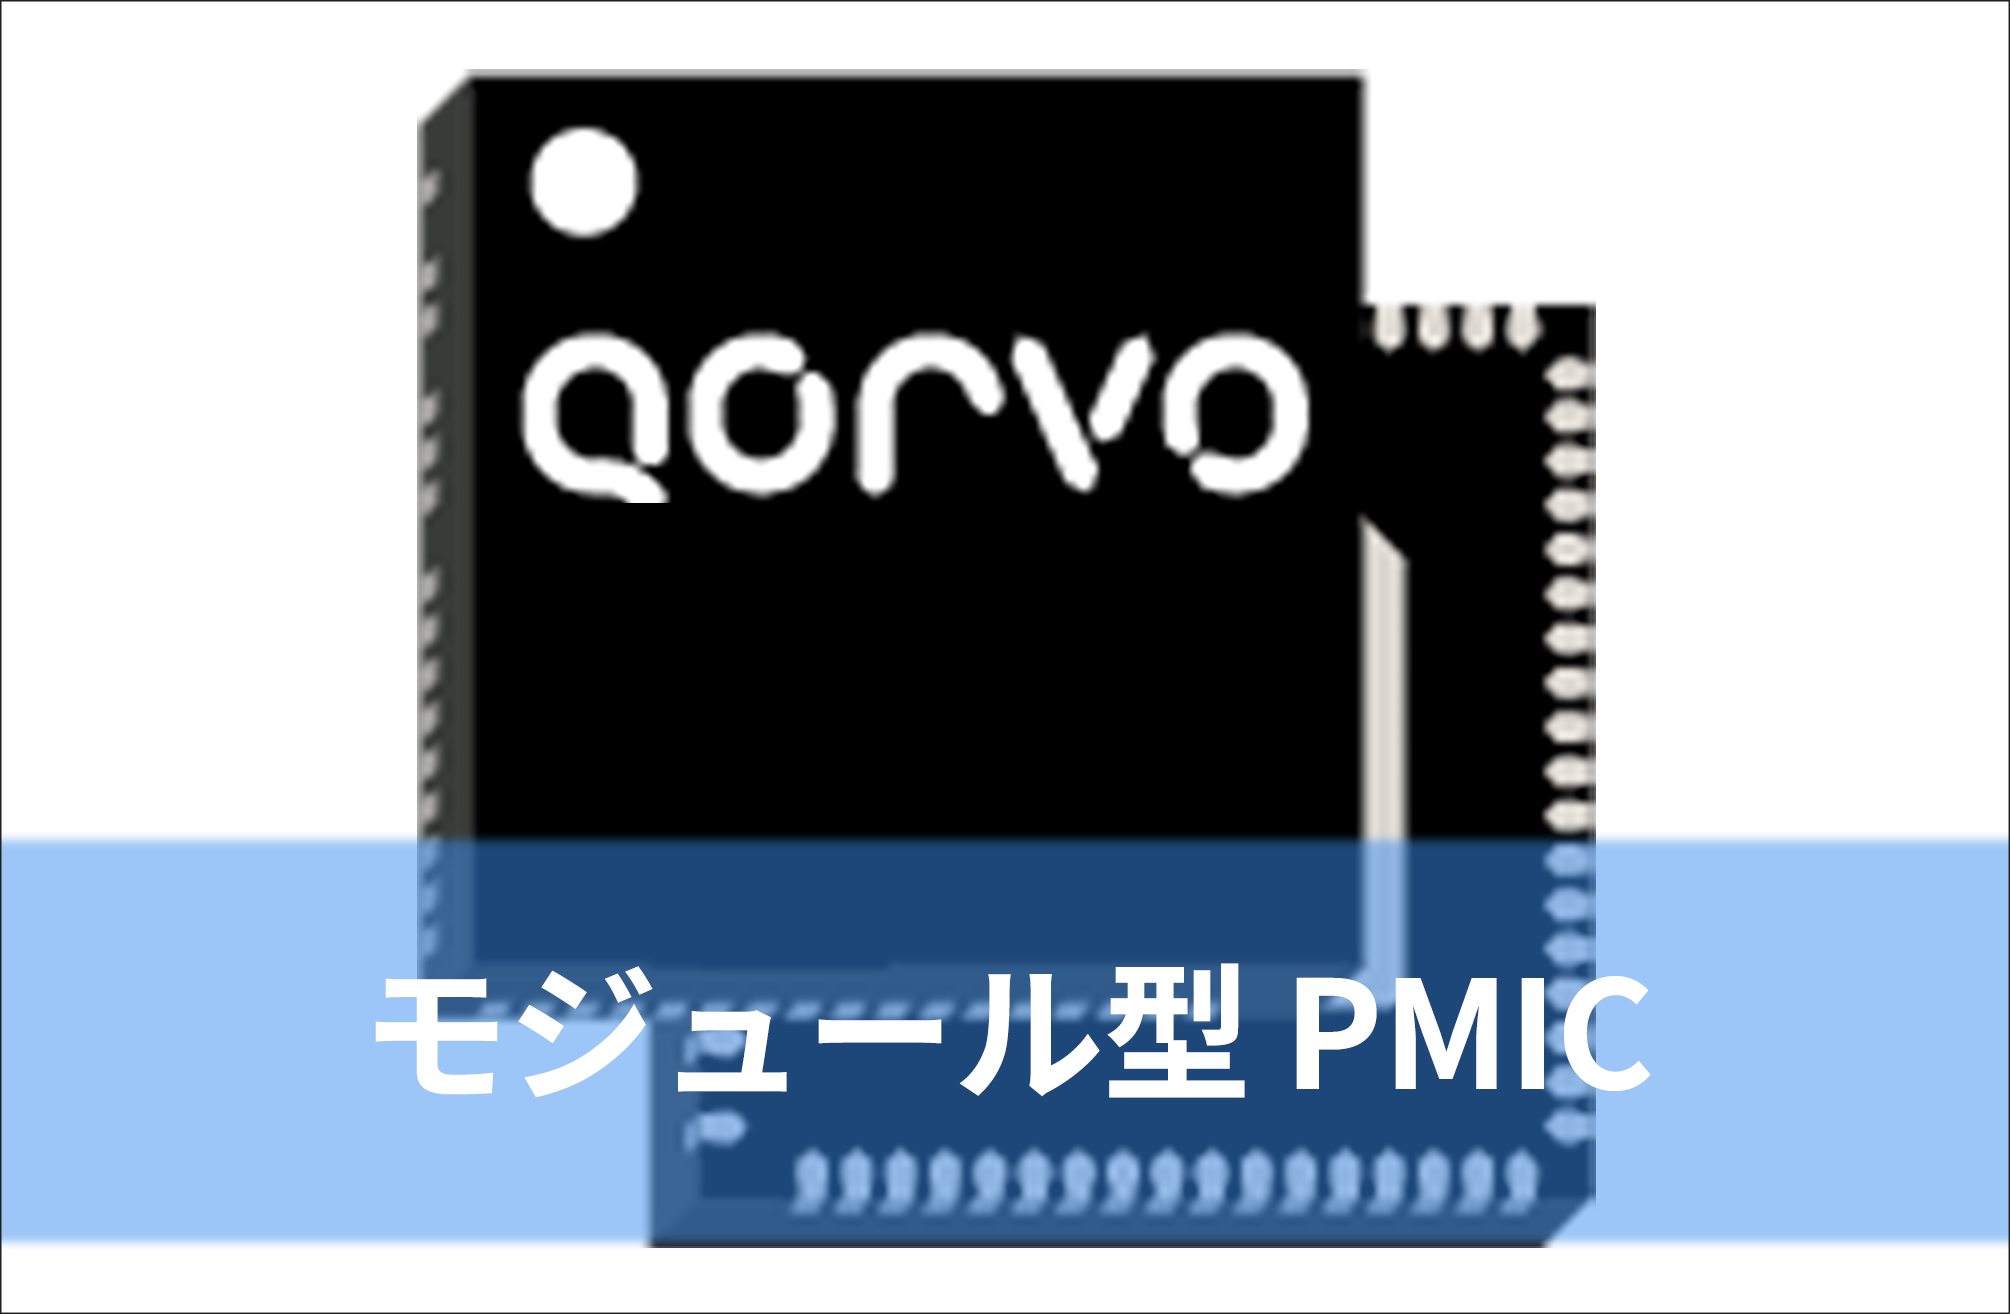 モジュール型 パワーマネジメントIC (PMIC)